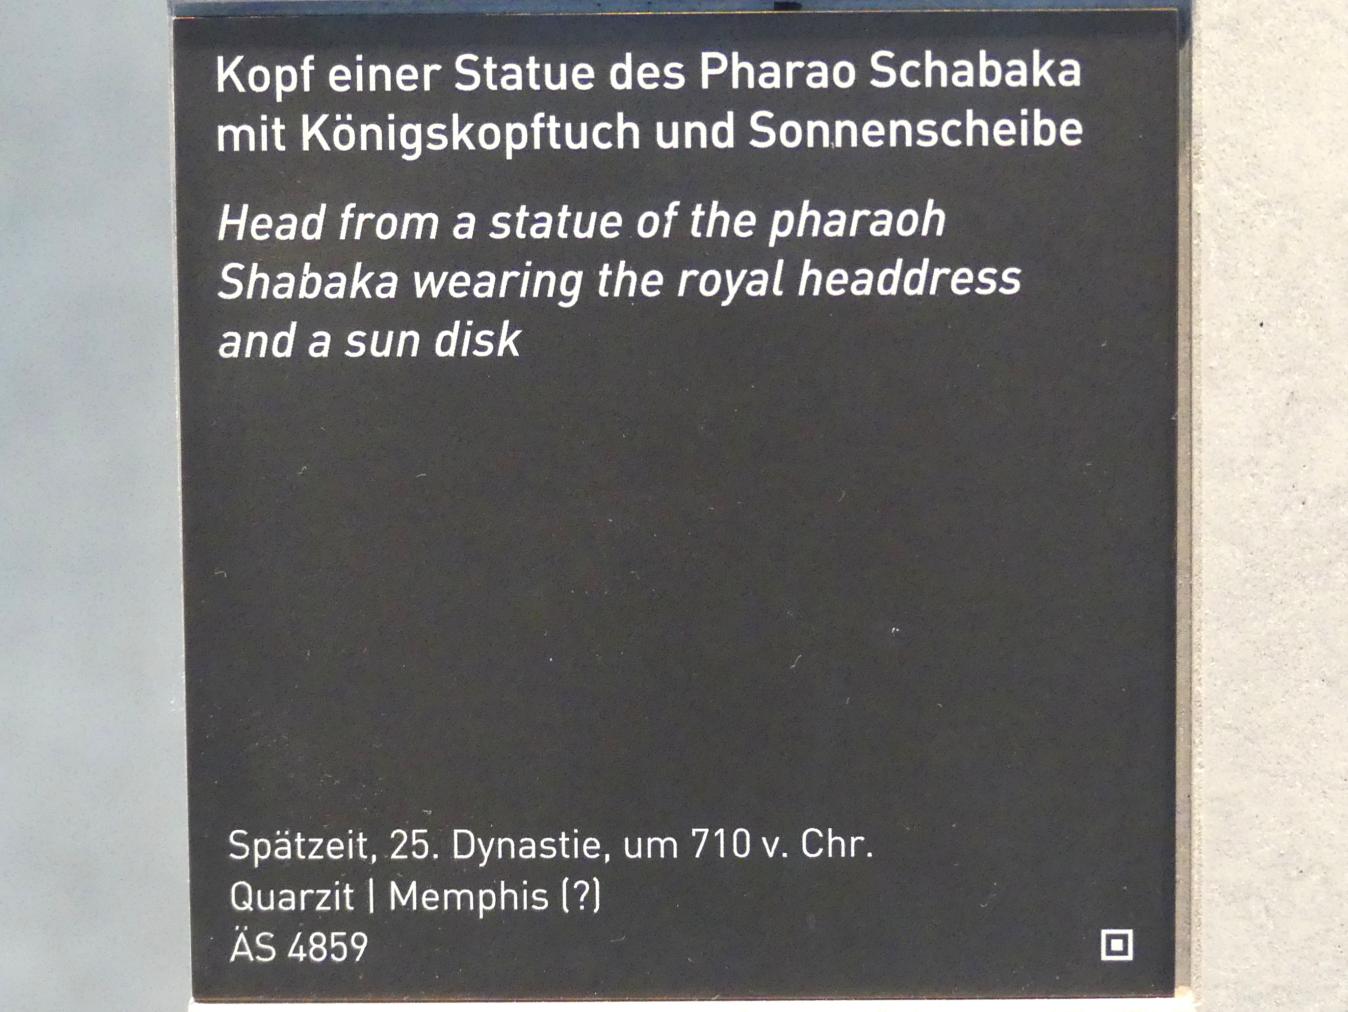 Kopf einer Statue des Pharao Schabaka mit Königskopftuch und Sonnenscheibe, 25. Dynastie, 705 - 690 v. Chr., 710 v. Chr., Bild 5/5